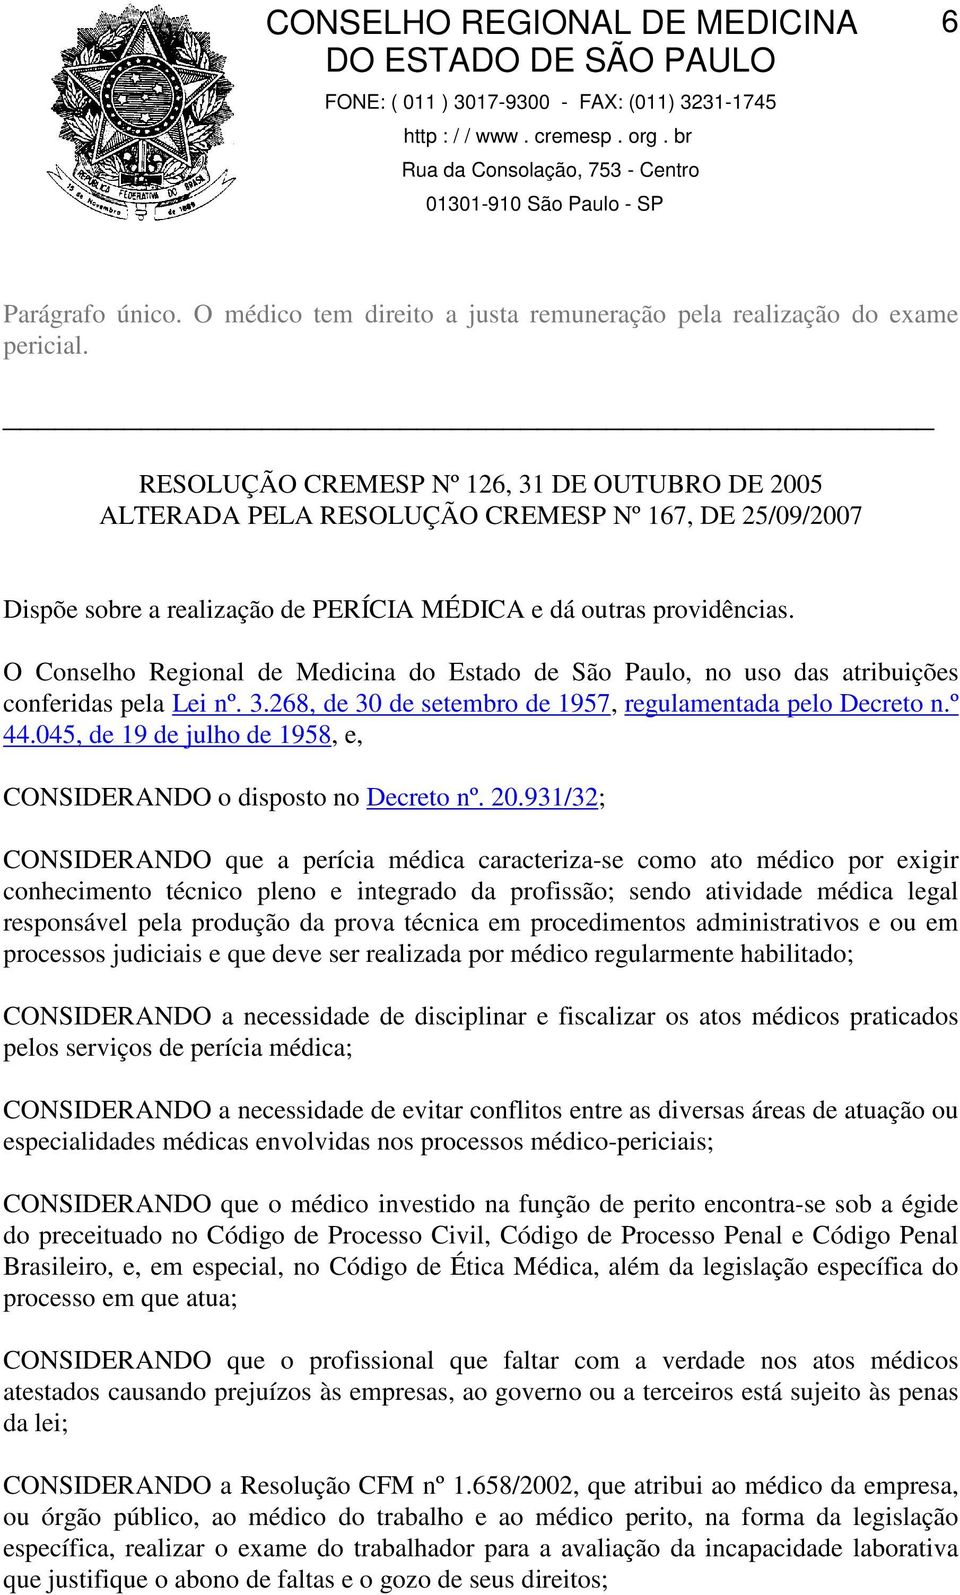 O Conselho Regional de Medicina do Estado de São Paulo, no uso das atribuições conferidas pela Lei nº. 3.268, de 30 de setembro de 1957, regulamentada pelo Decreto n.º 44.